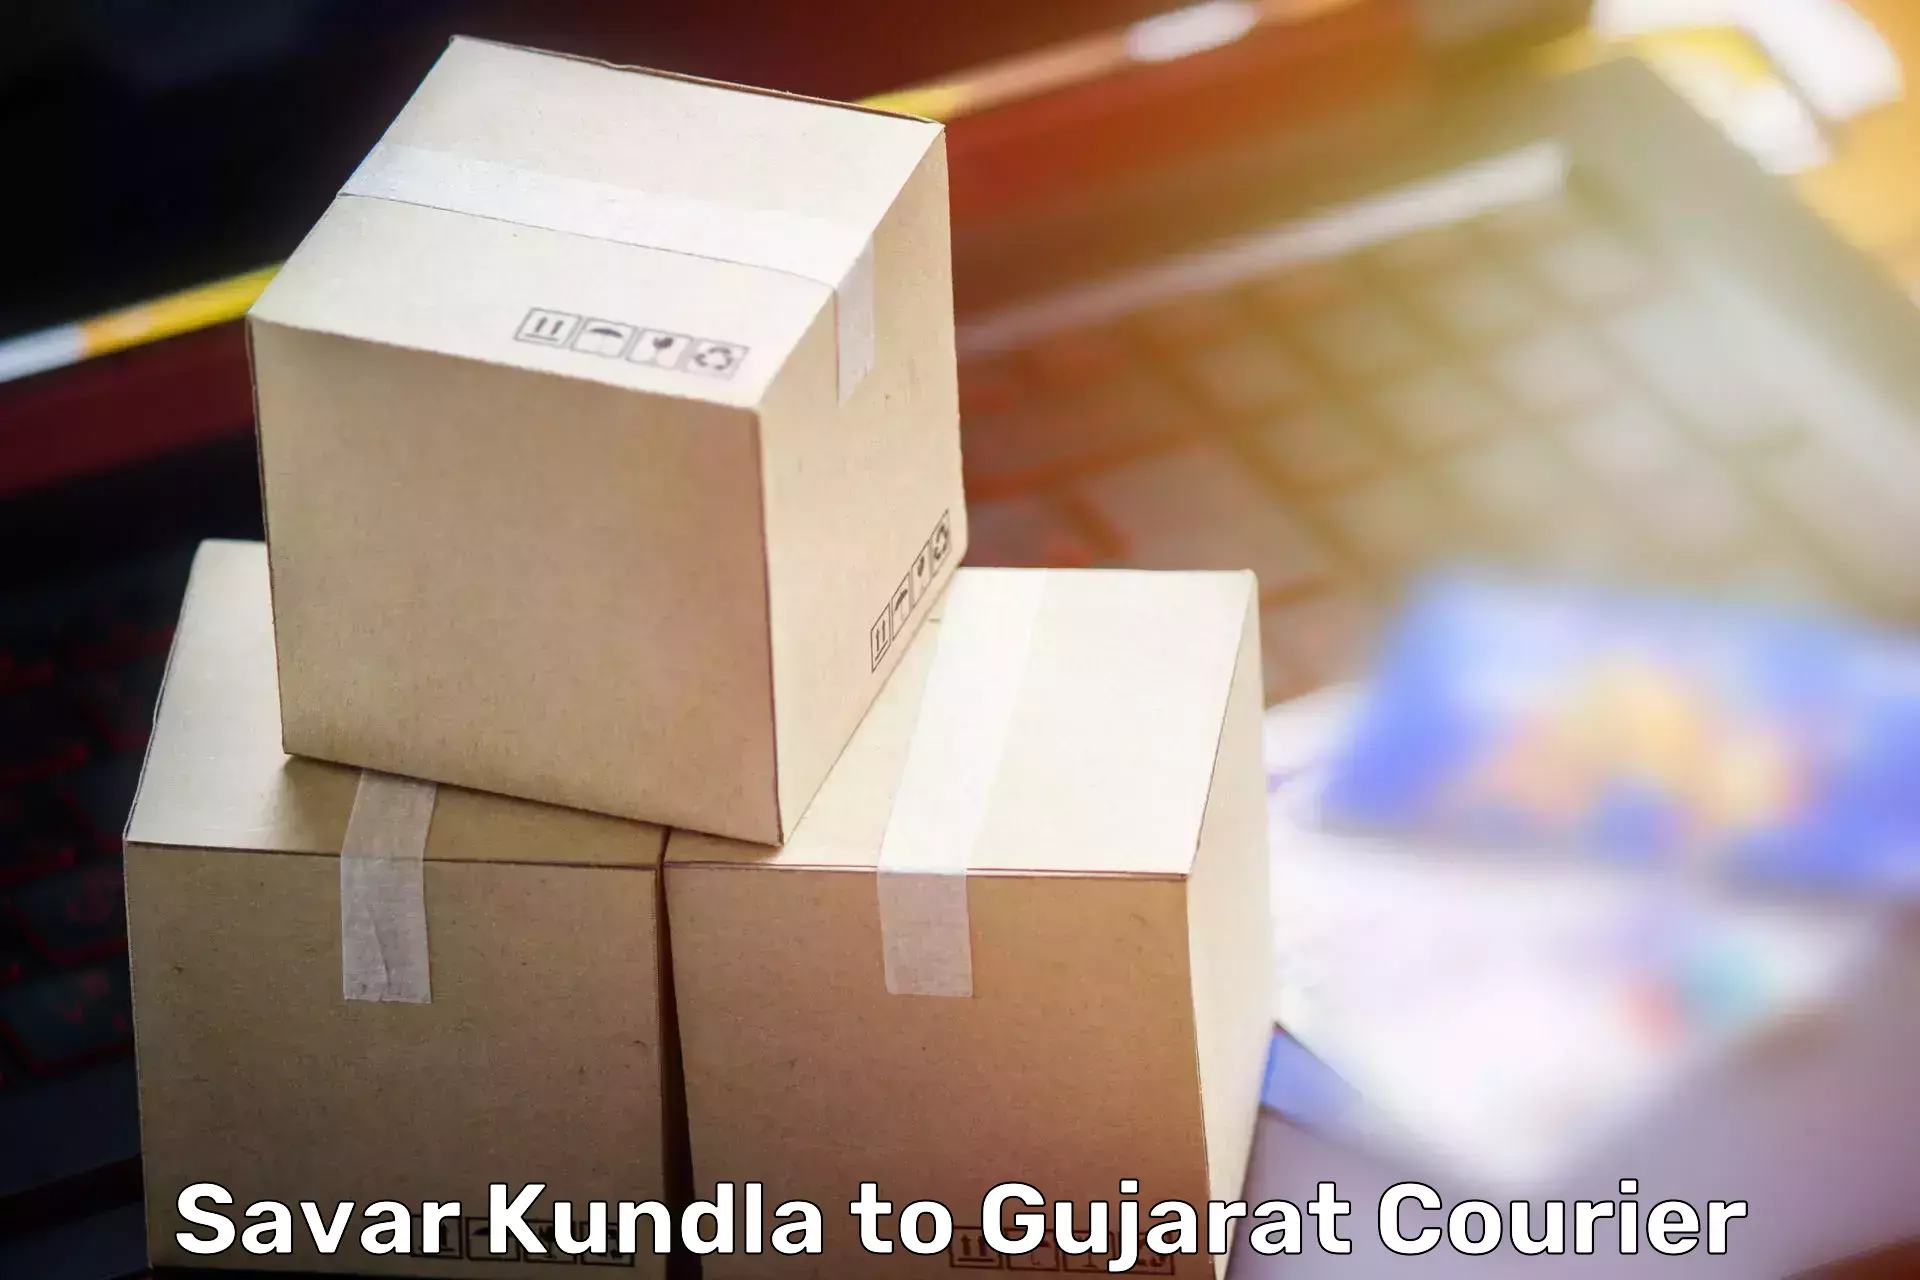 Furniture transport solutions Savar Kundla to Dholka